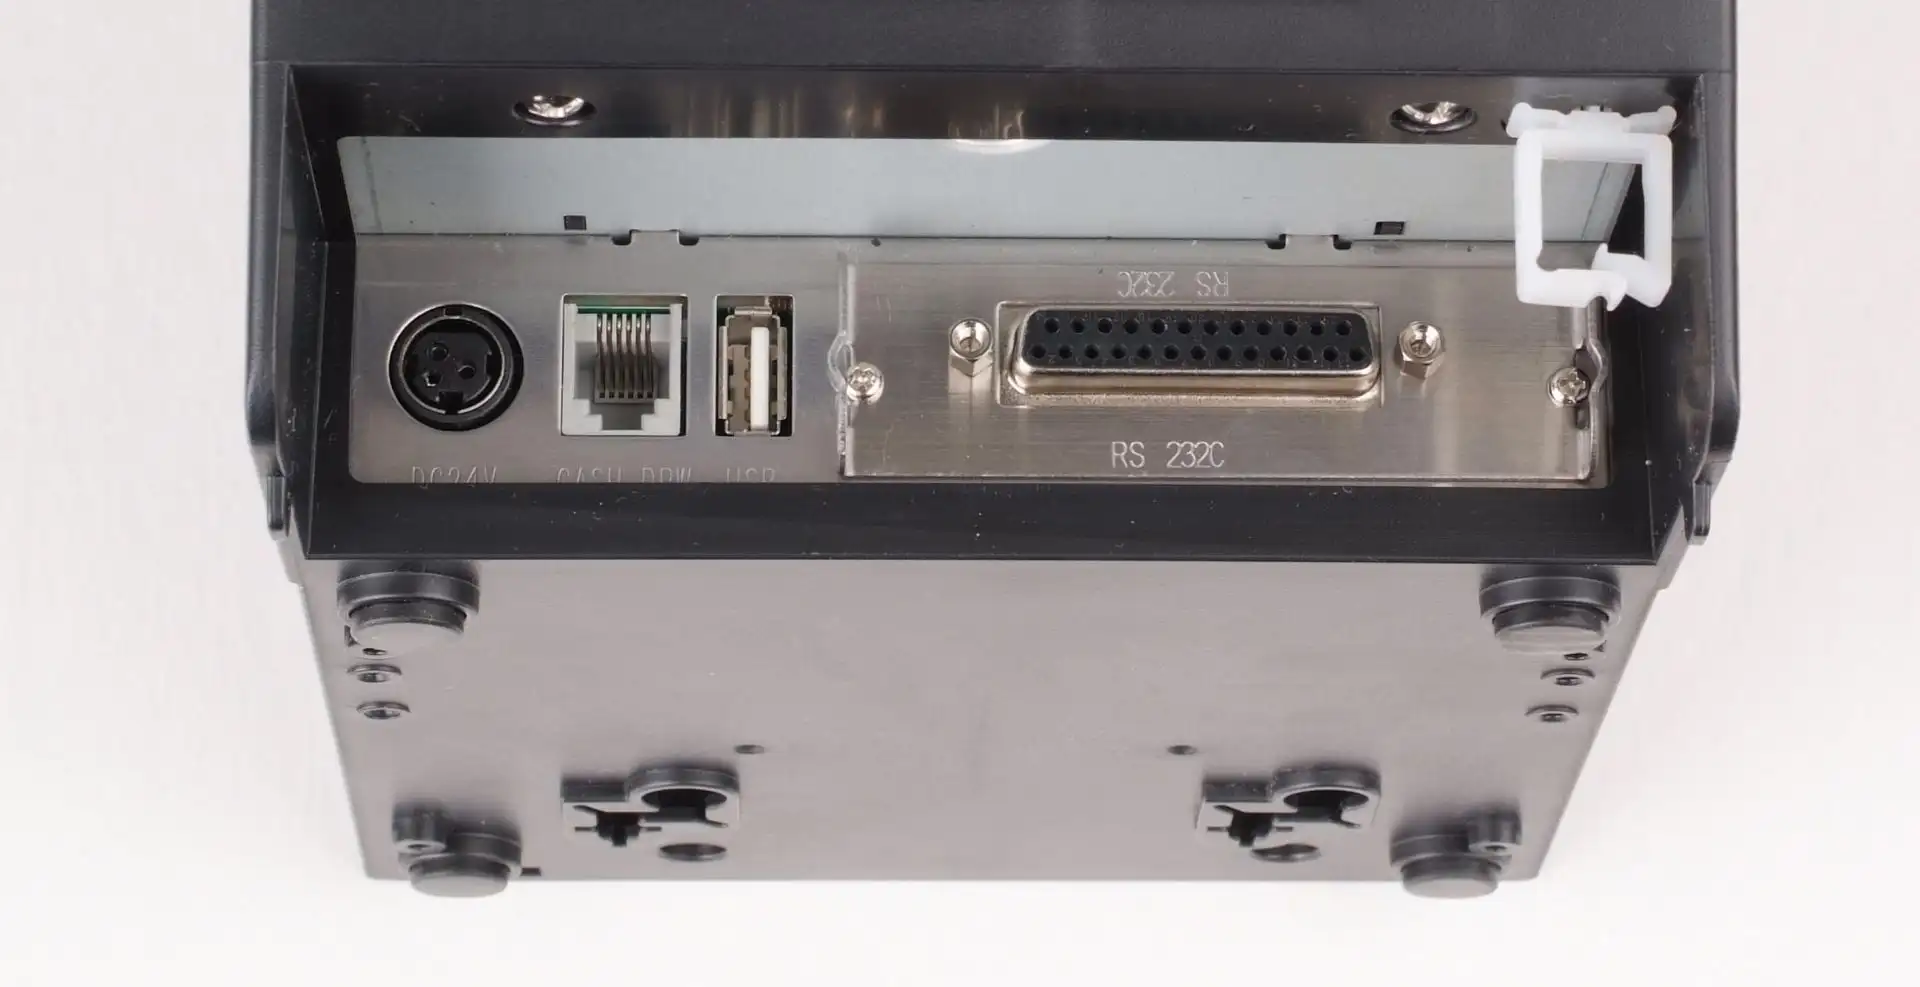 SNBC Bondrucker BTP-R880V mit seriellem, USB & Ethernet Anschlüssen in schwarz von hinten